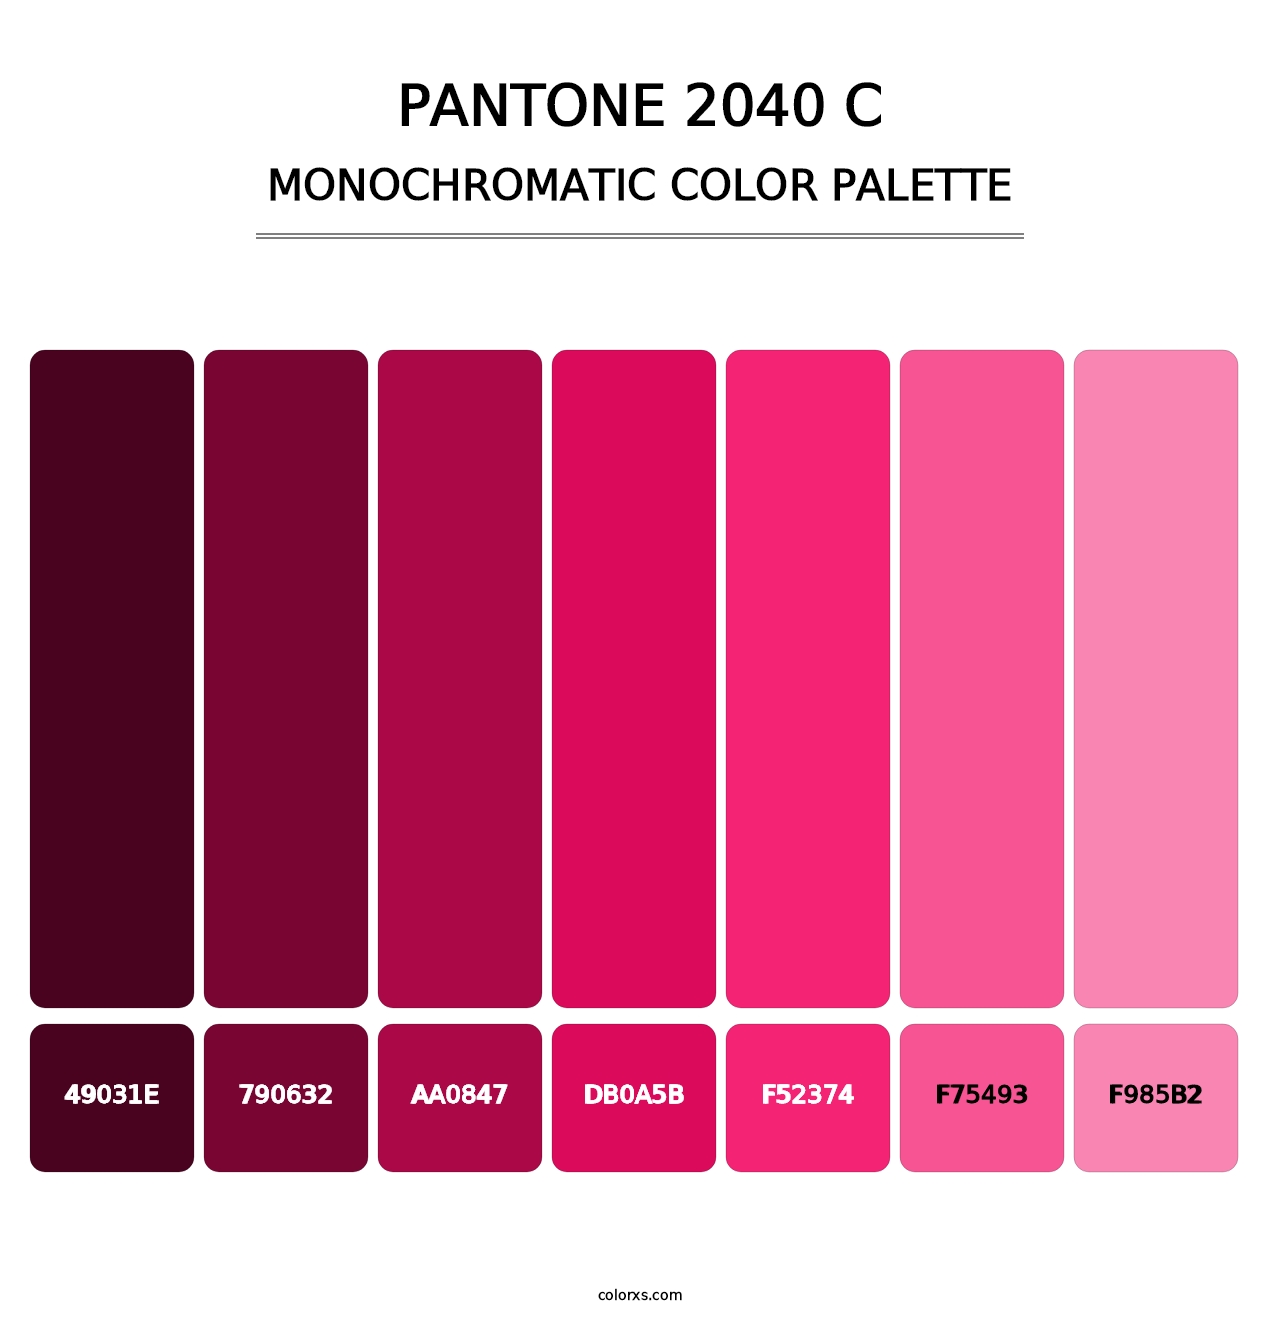 PANTONE 2040 C - Monochromatic Color Palette